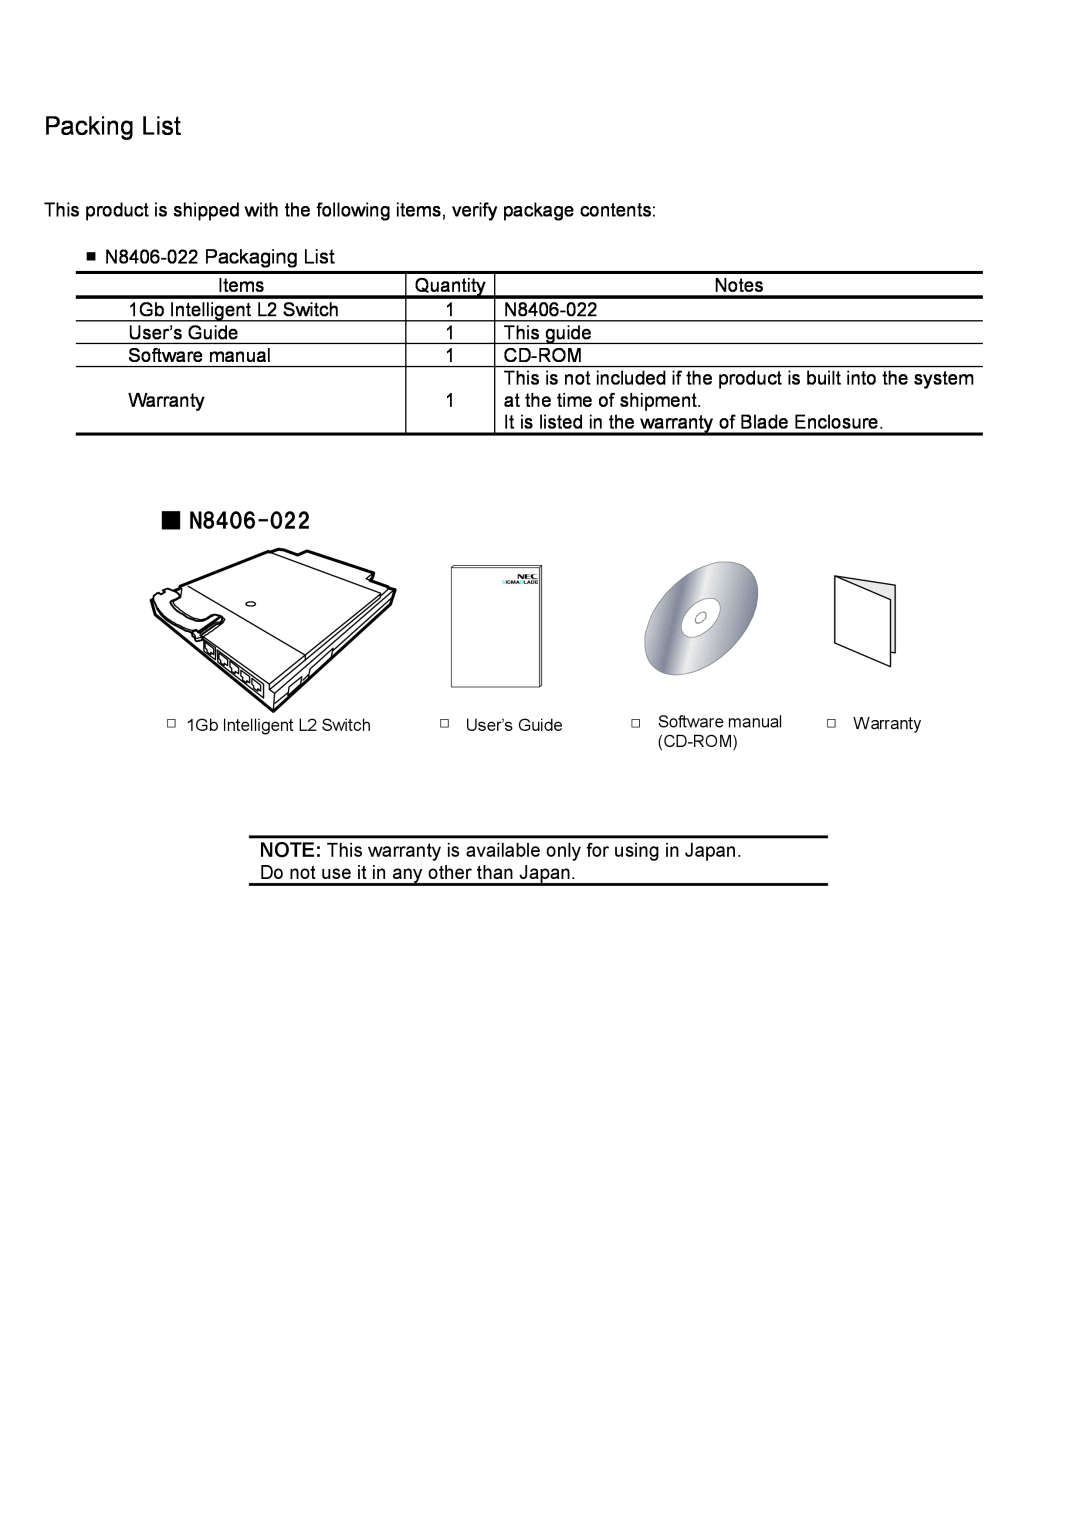 NEC manual Packing List, N8406-022 Packaging List 